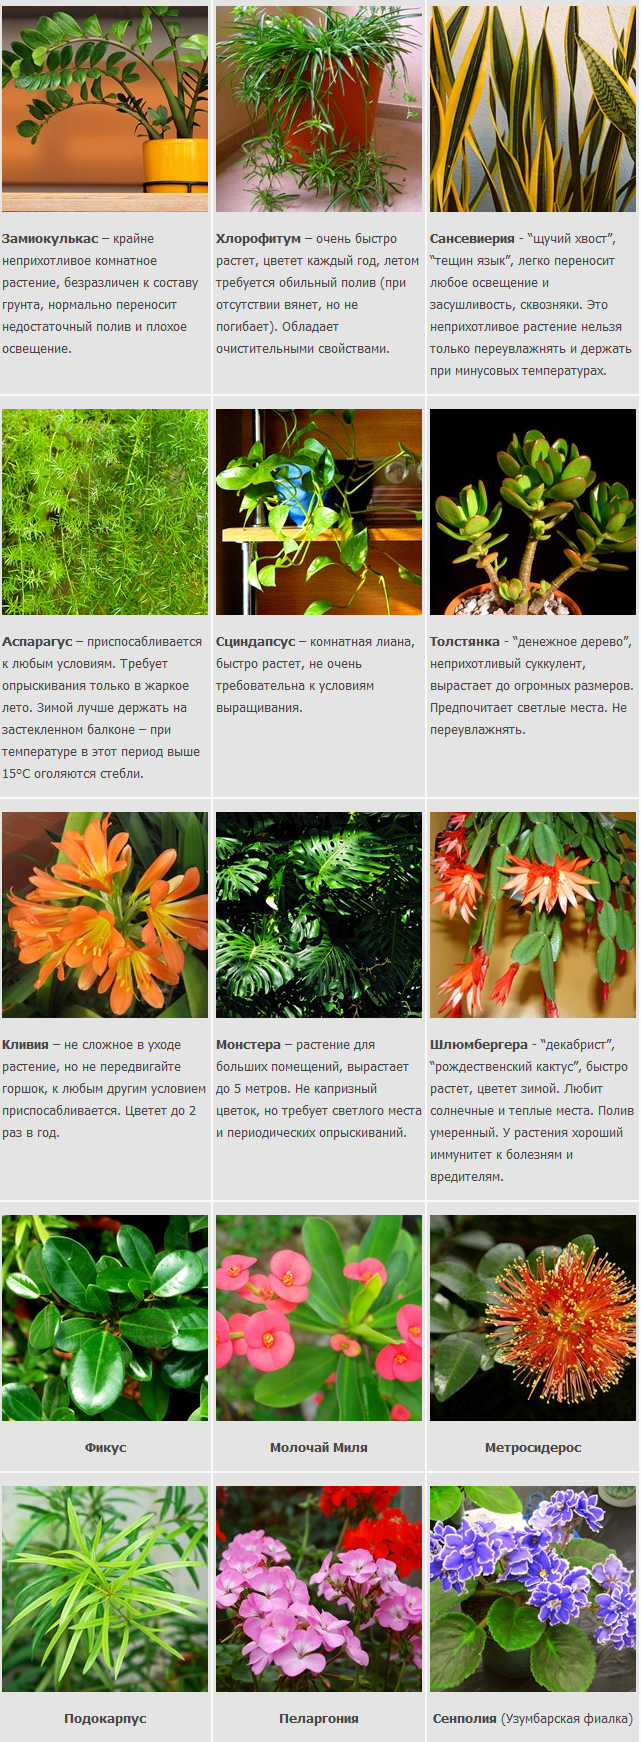 Распространенные Комнатные Растения Фото И Названия